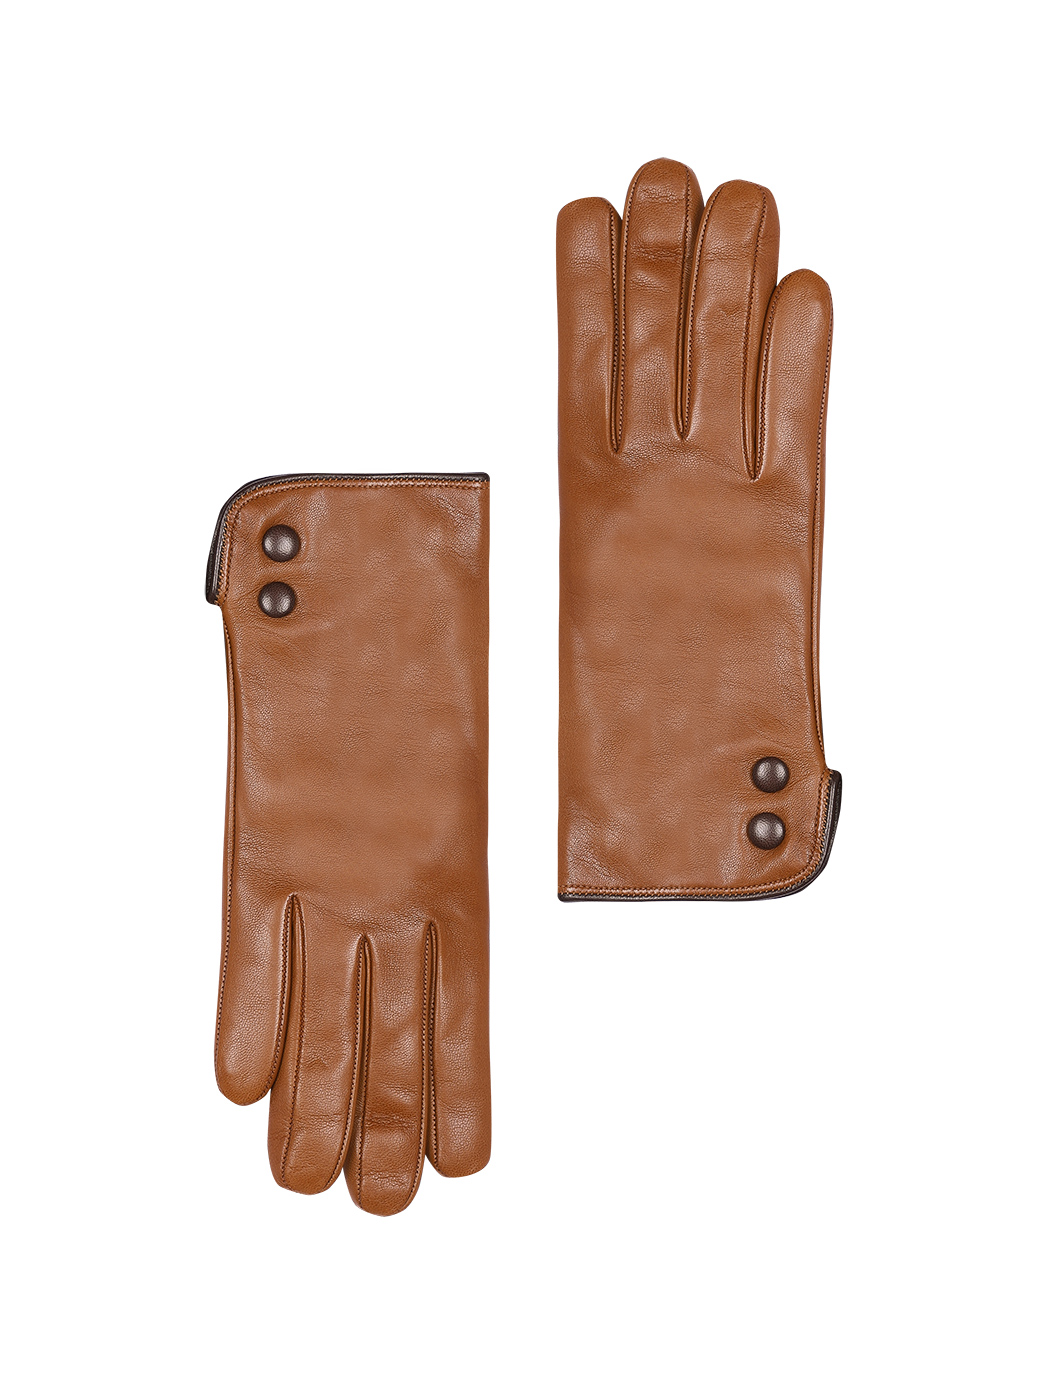 Кожаные перчатки светло - коричневого цвета с пуговицами по бокам 